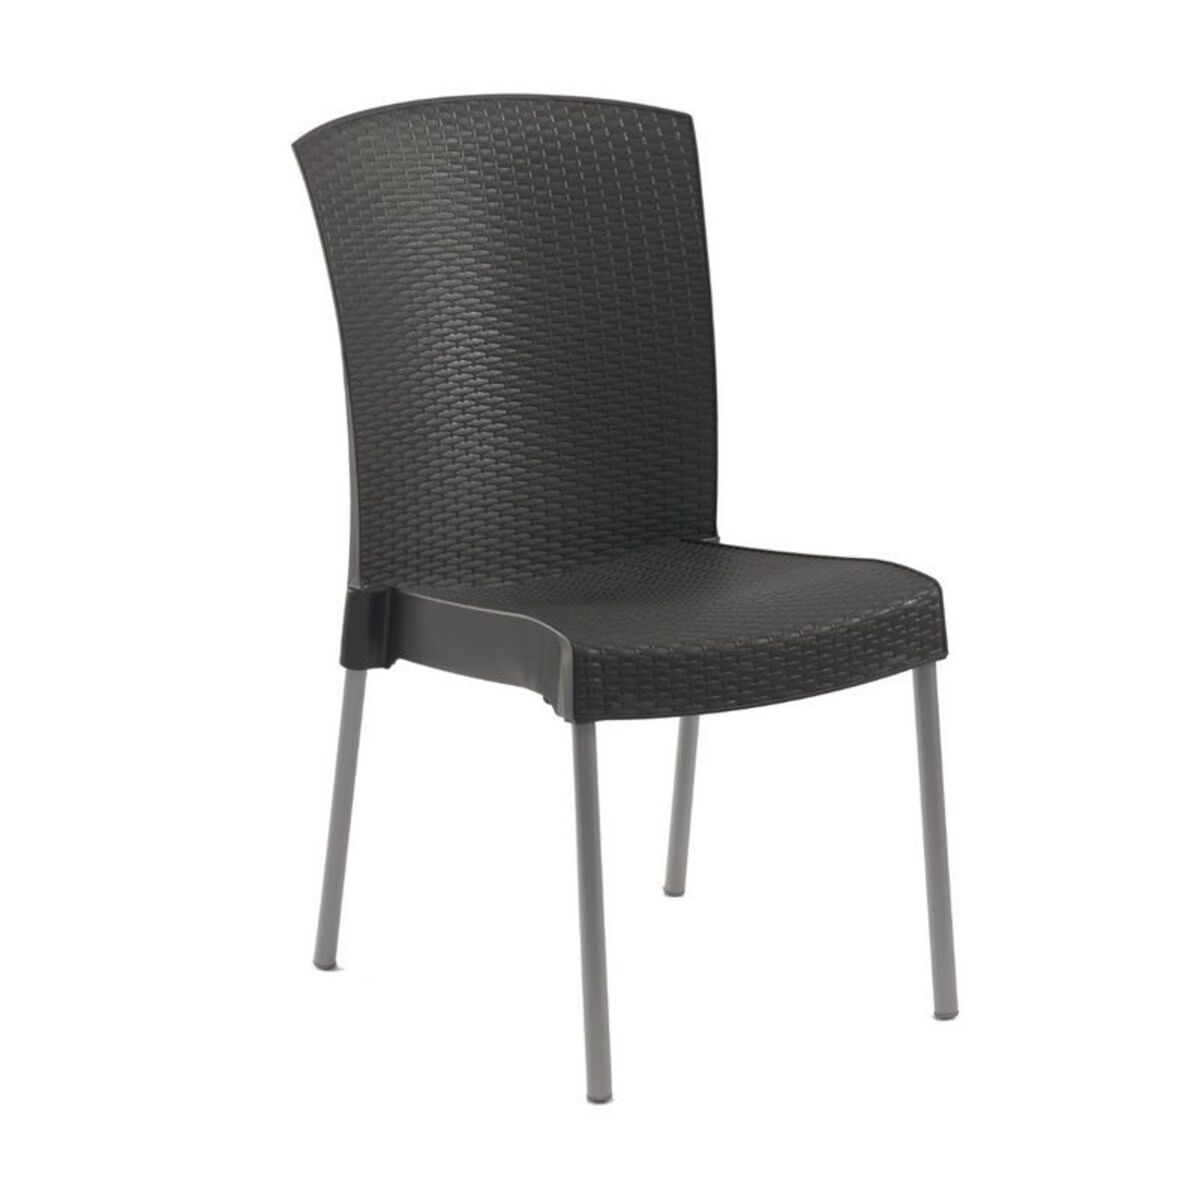 Chaise coloris anthracite pieds en aluminium grosfillex - par 16